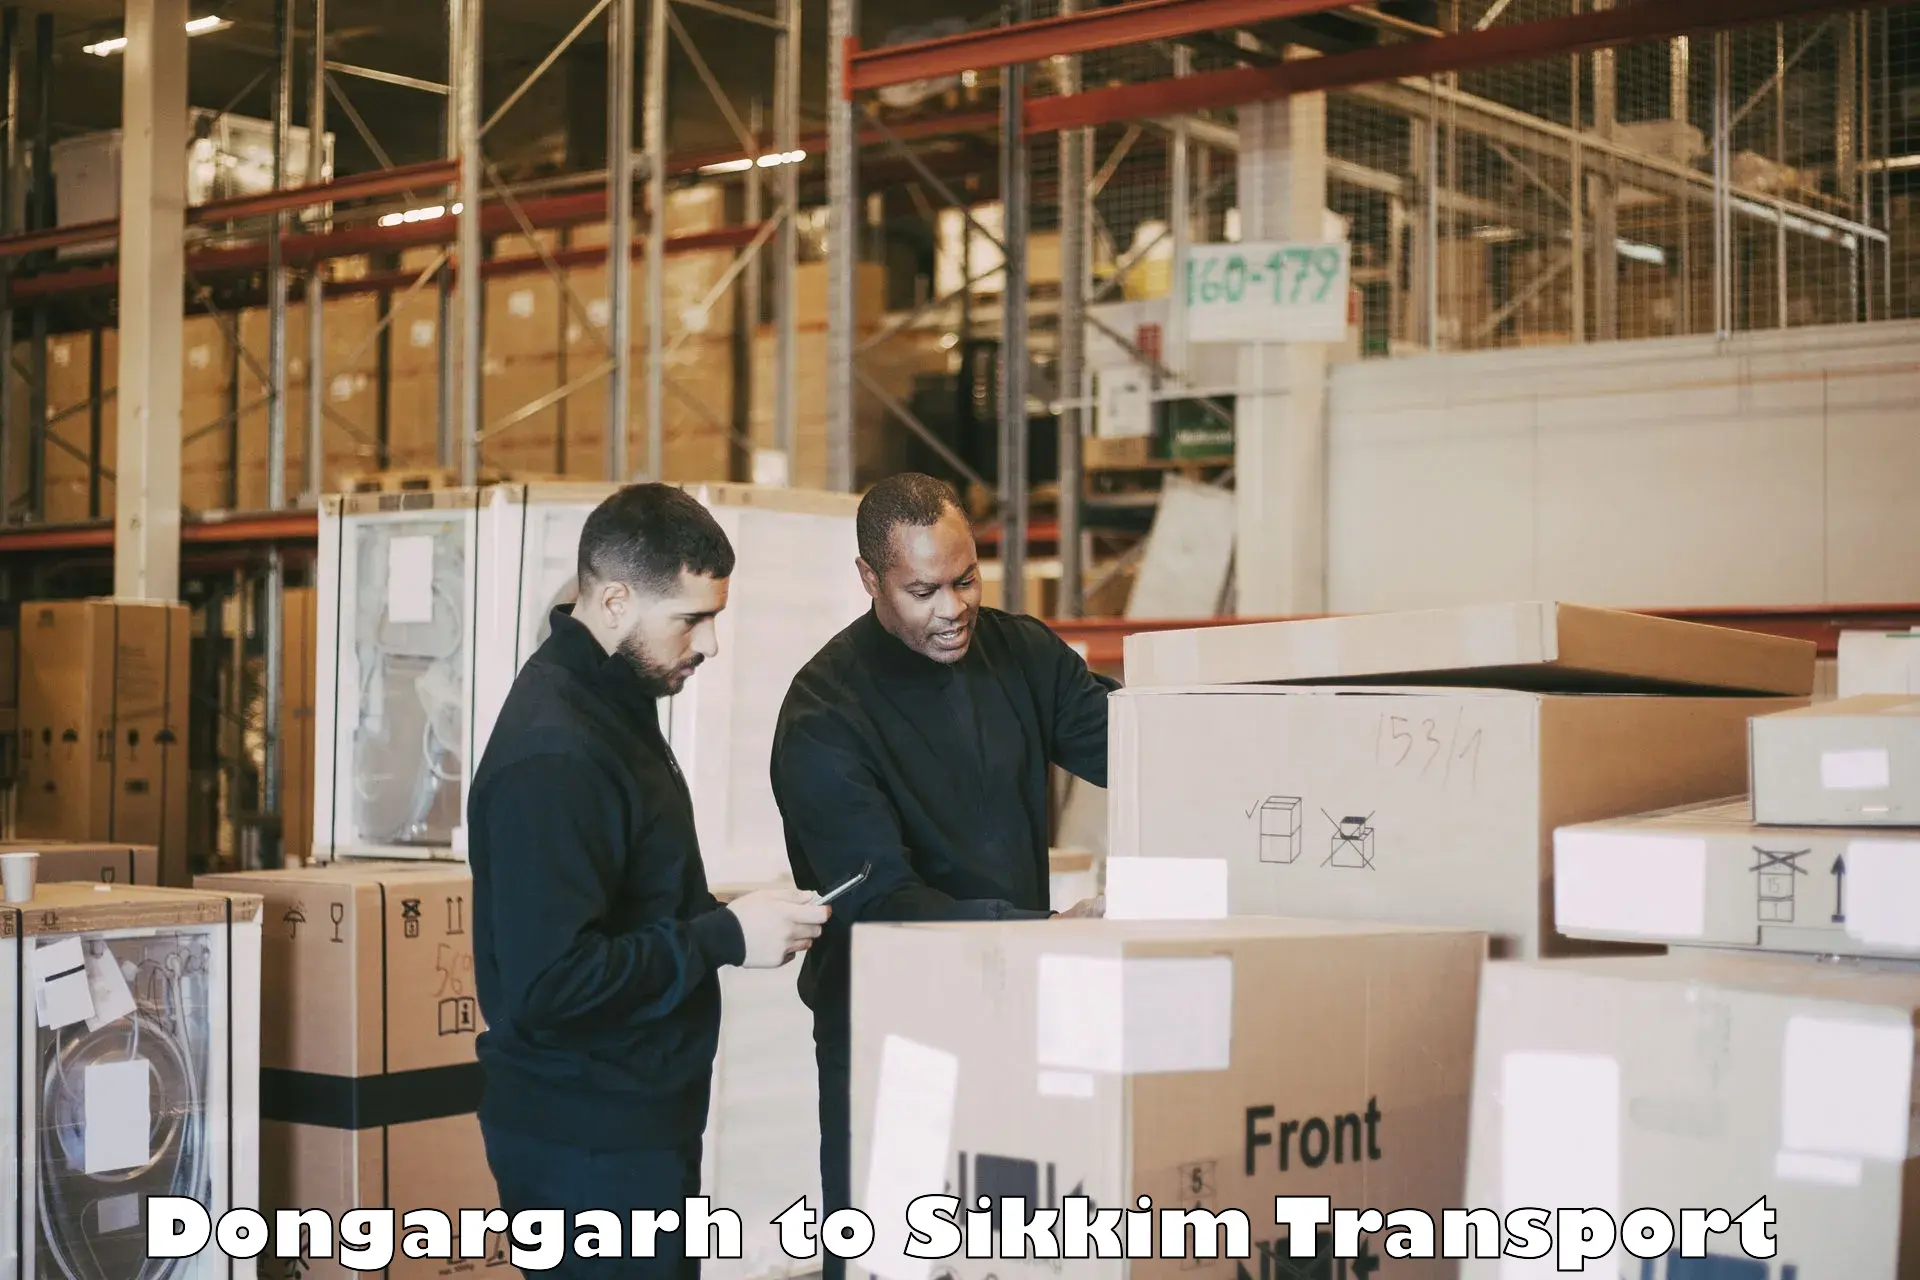 Cargo transportation services Dongargarh to Mangan